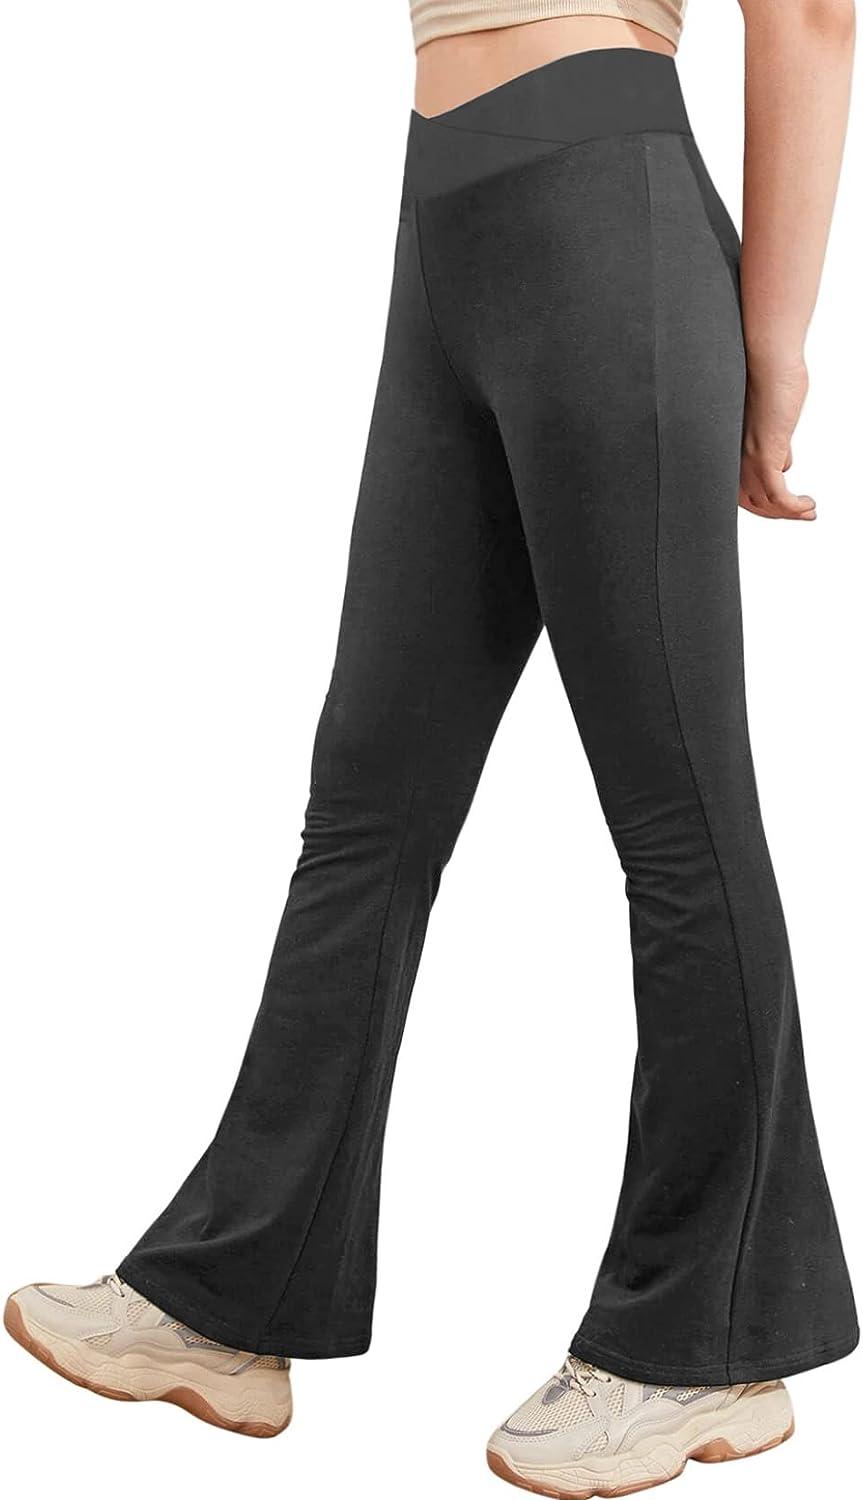 Bootcut Leggings for Girls Black Size 4t 5t Yoga Bootleg Pants for Kids  Dance 